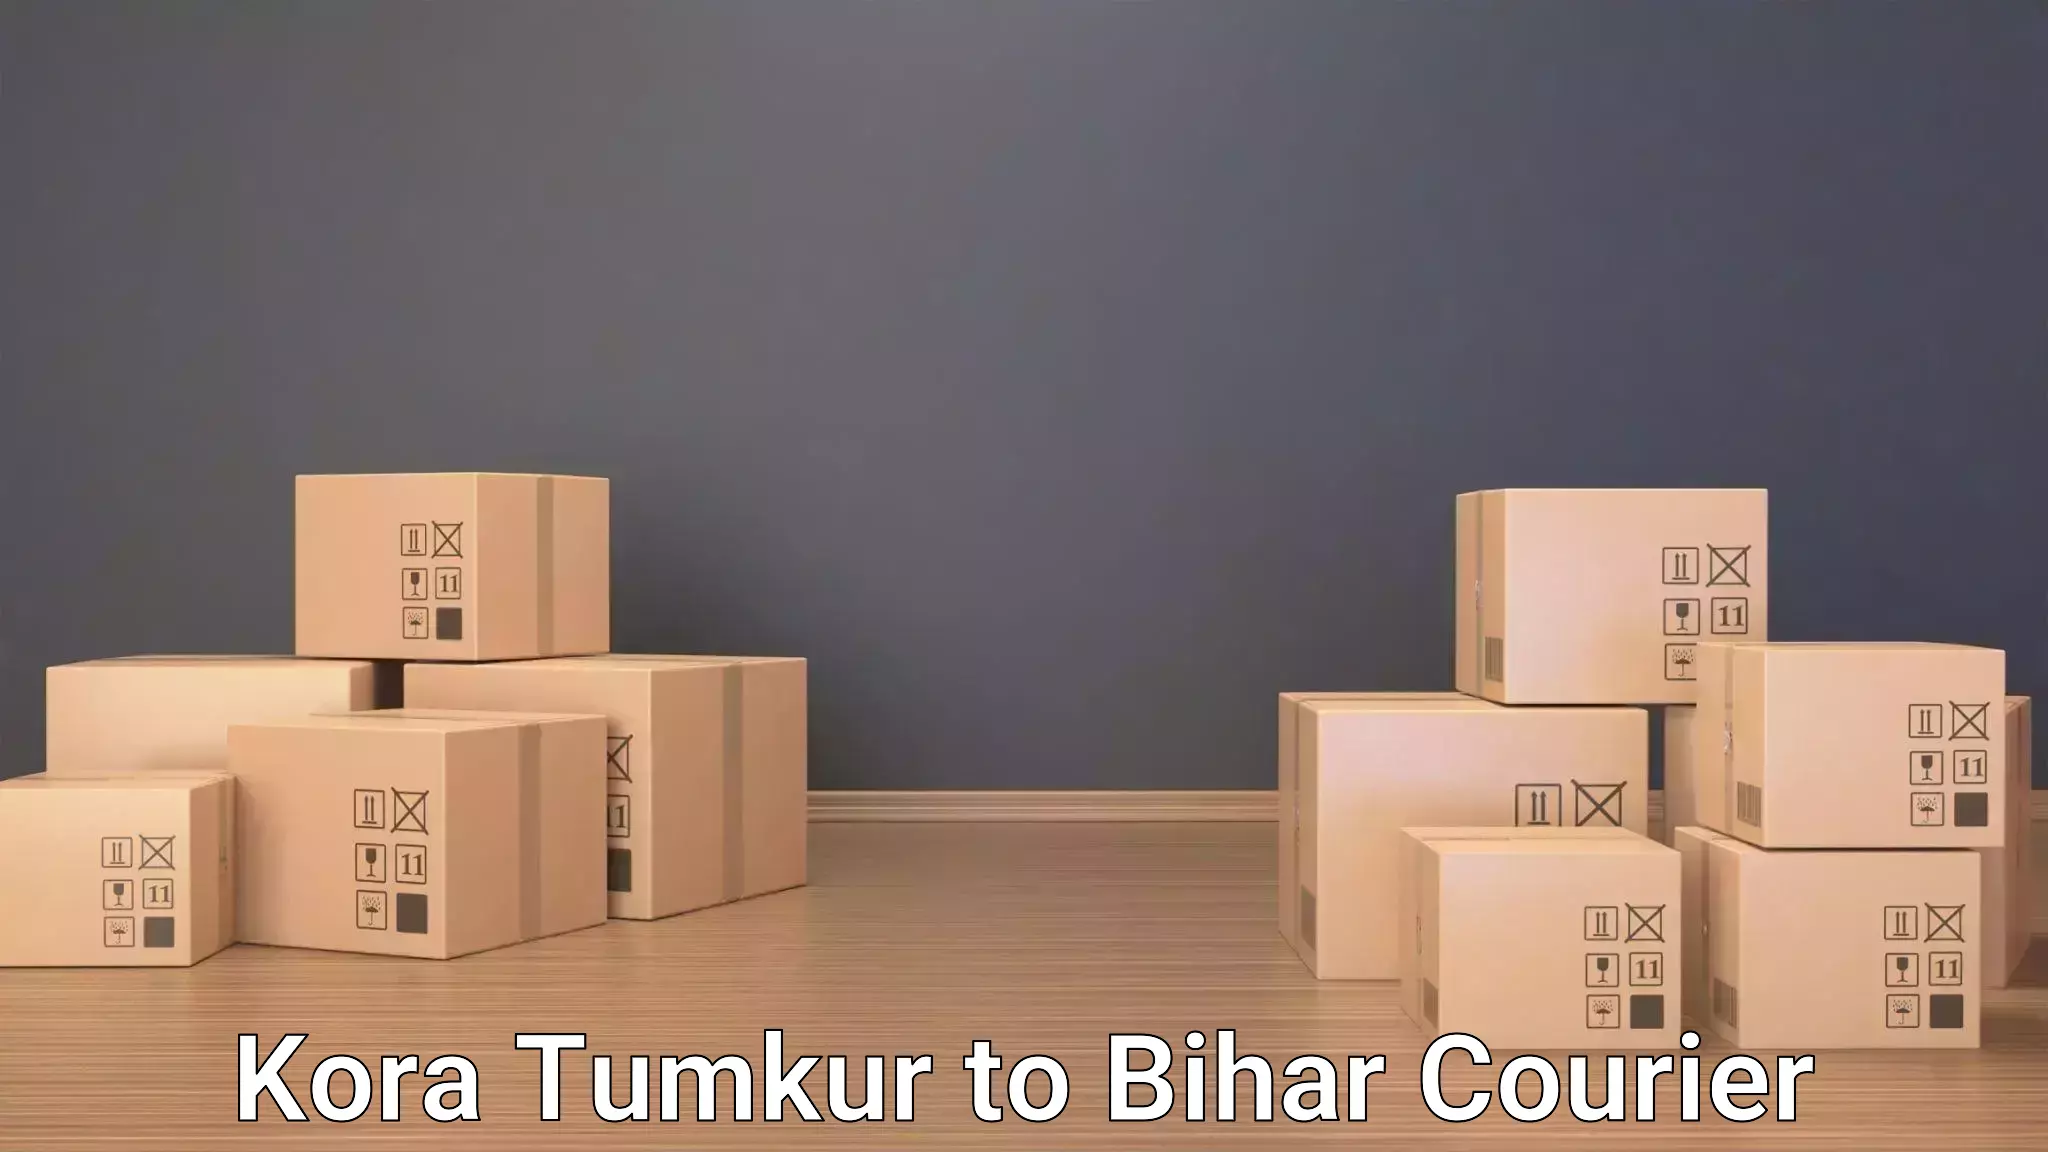 Door to door luggage delivery Kora Tumkur to Bihta